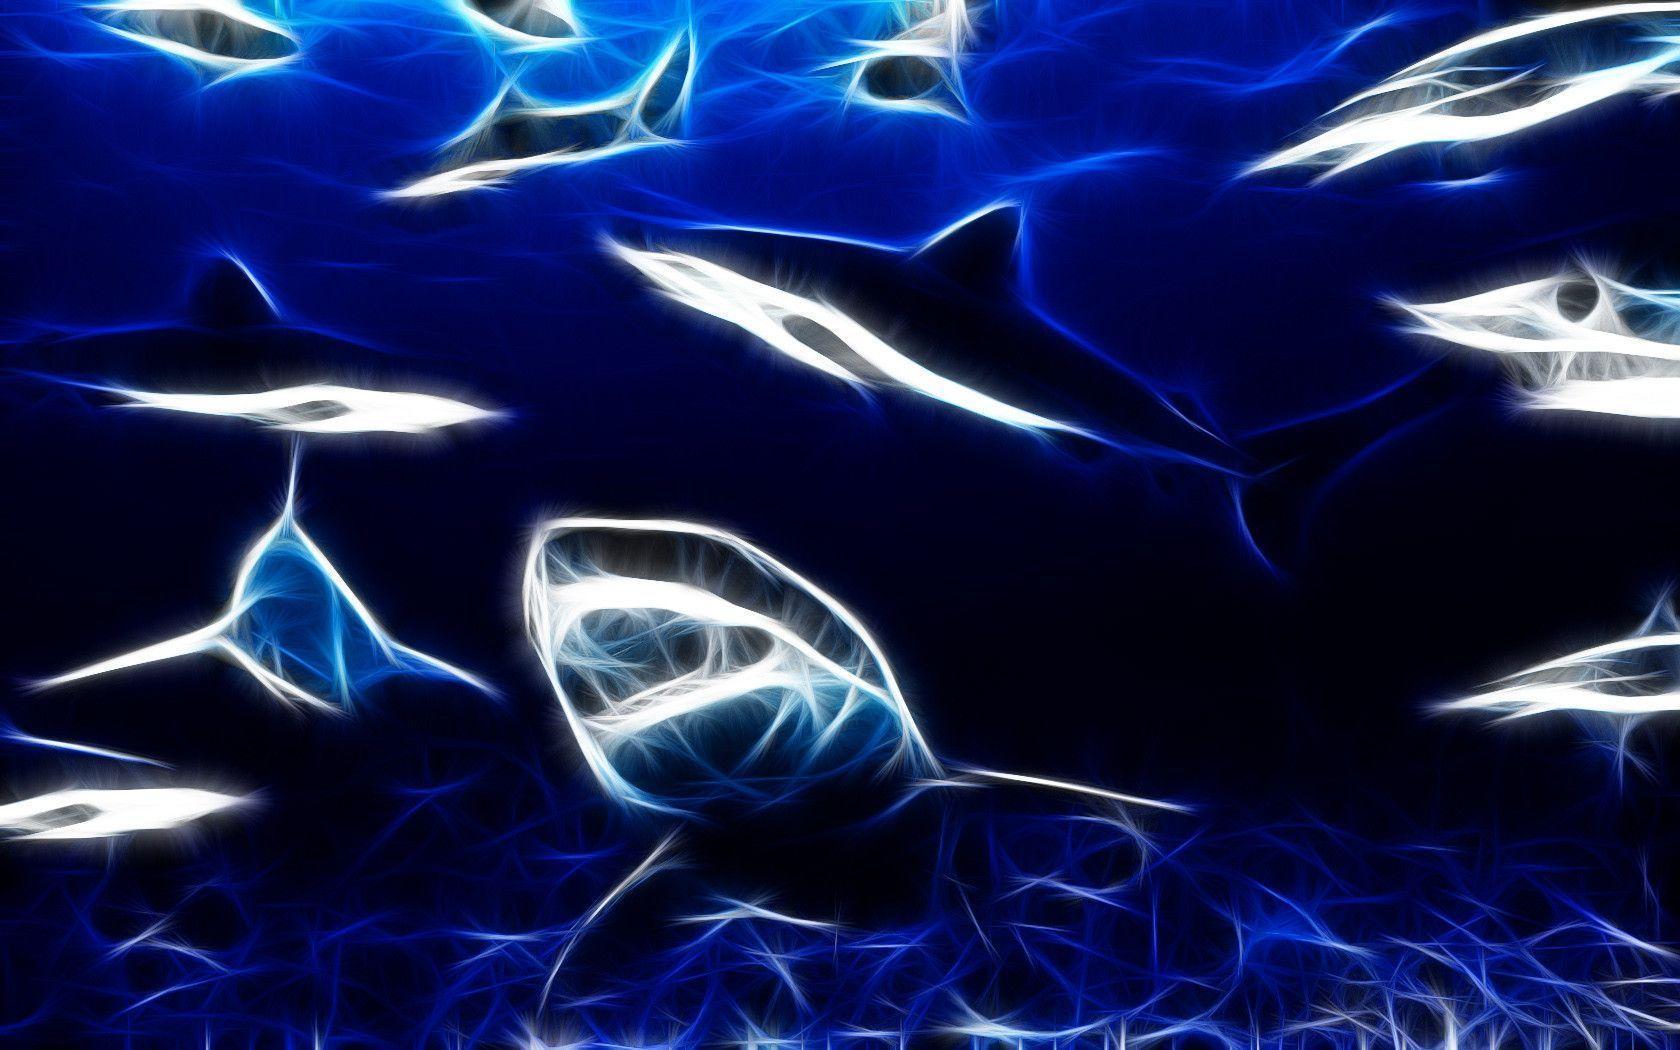 3D Shark Wallpaper. Free Download Wallpaper from wallpaperank